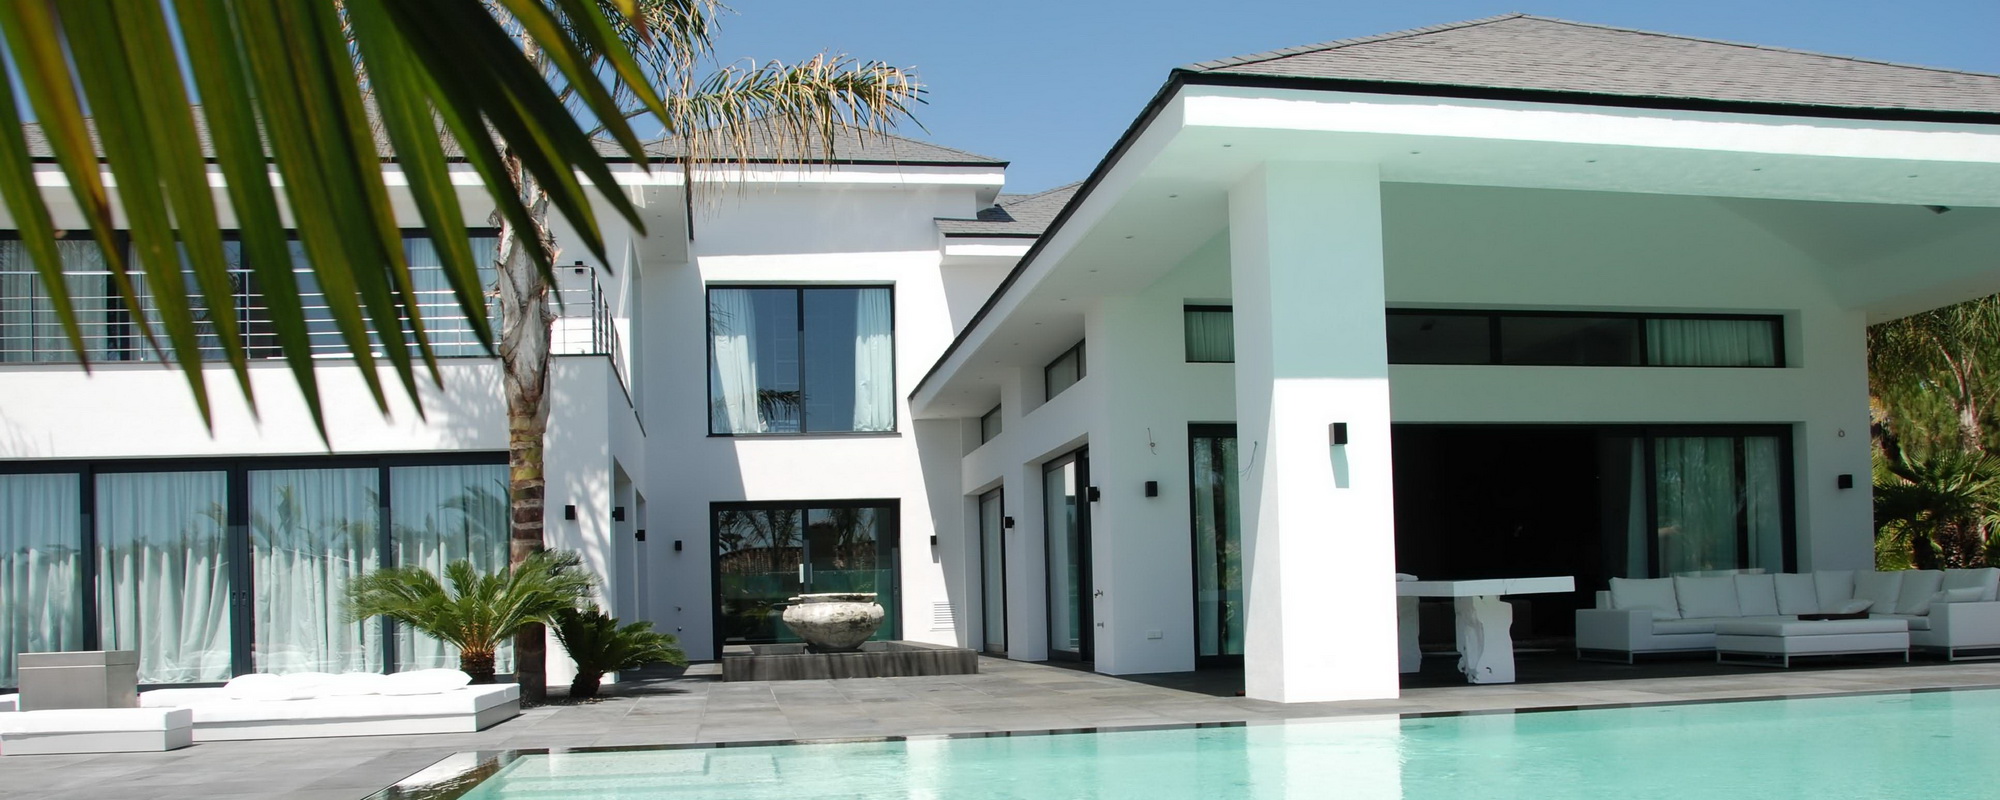 miami-styled-contemporary-villa-los-monteros